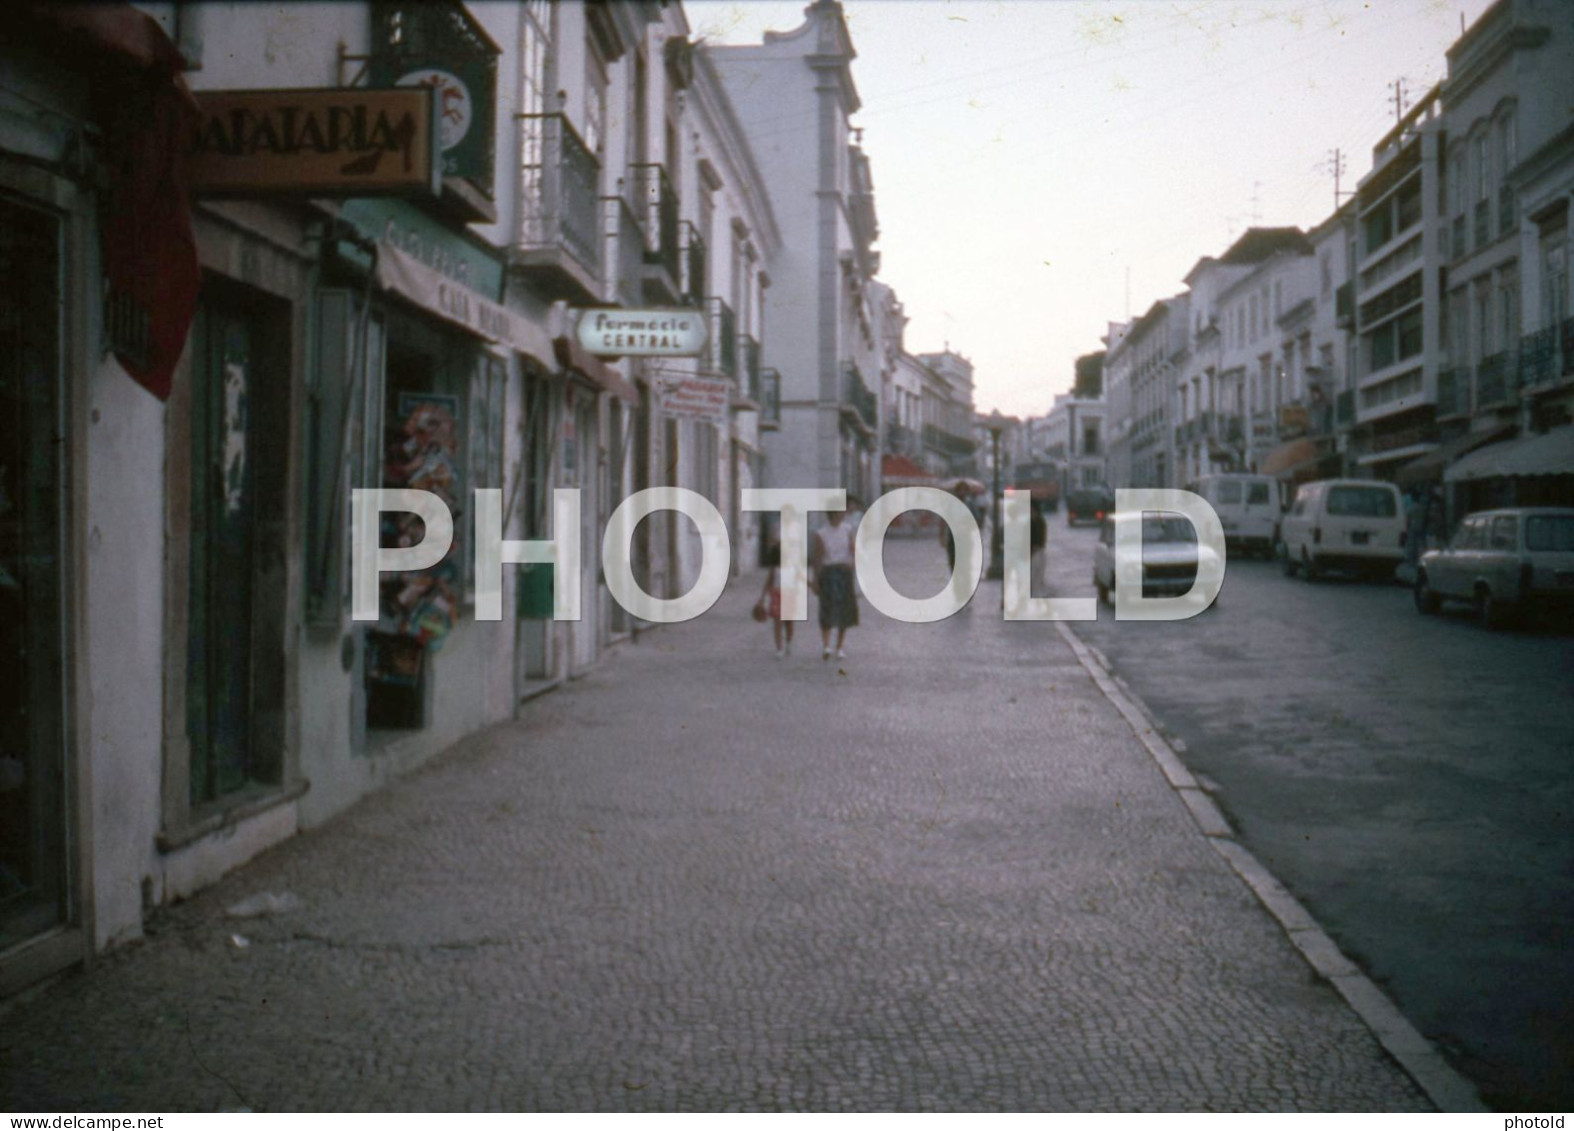 7 SLIDES SET 1984 ALGARVE PORTUGAL 16mm DIAPOSITIVE SLIDE Not PHOTO No FOTO Nb4084 - Dias